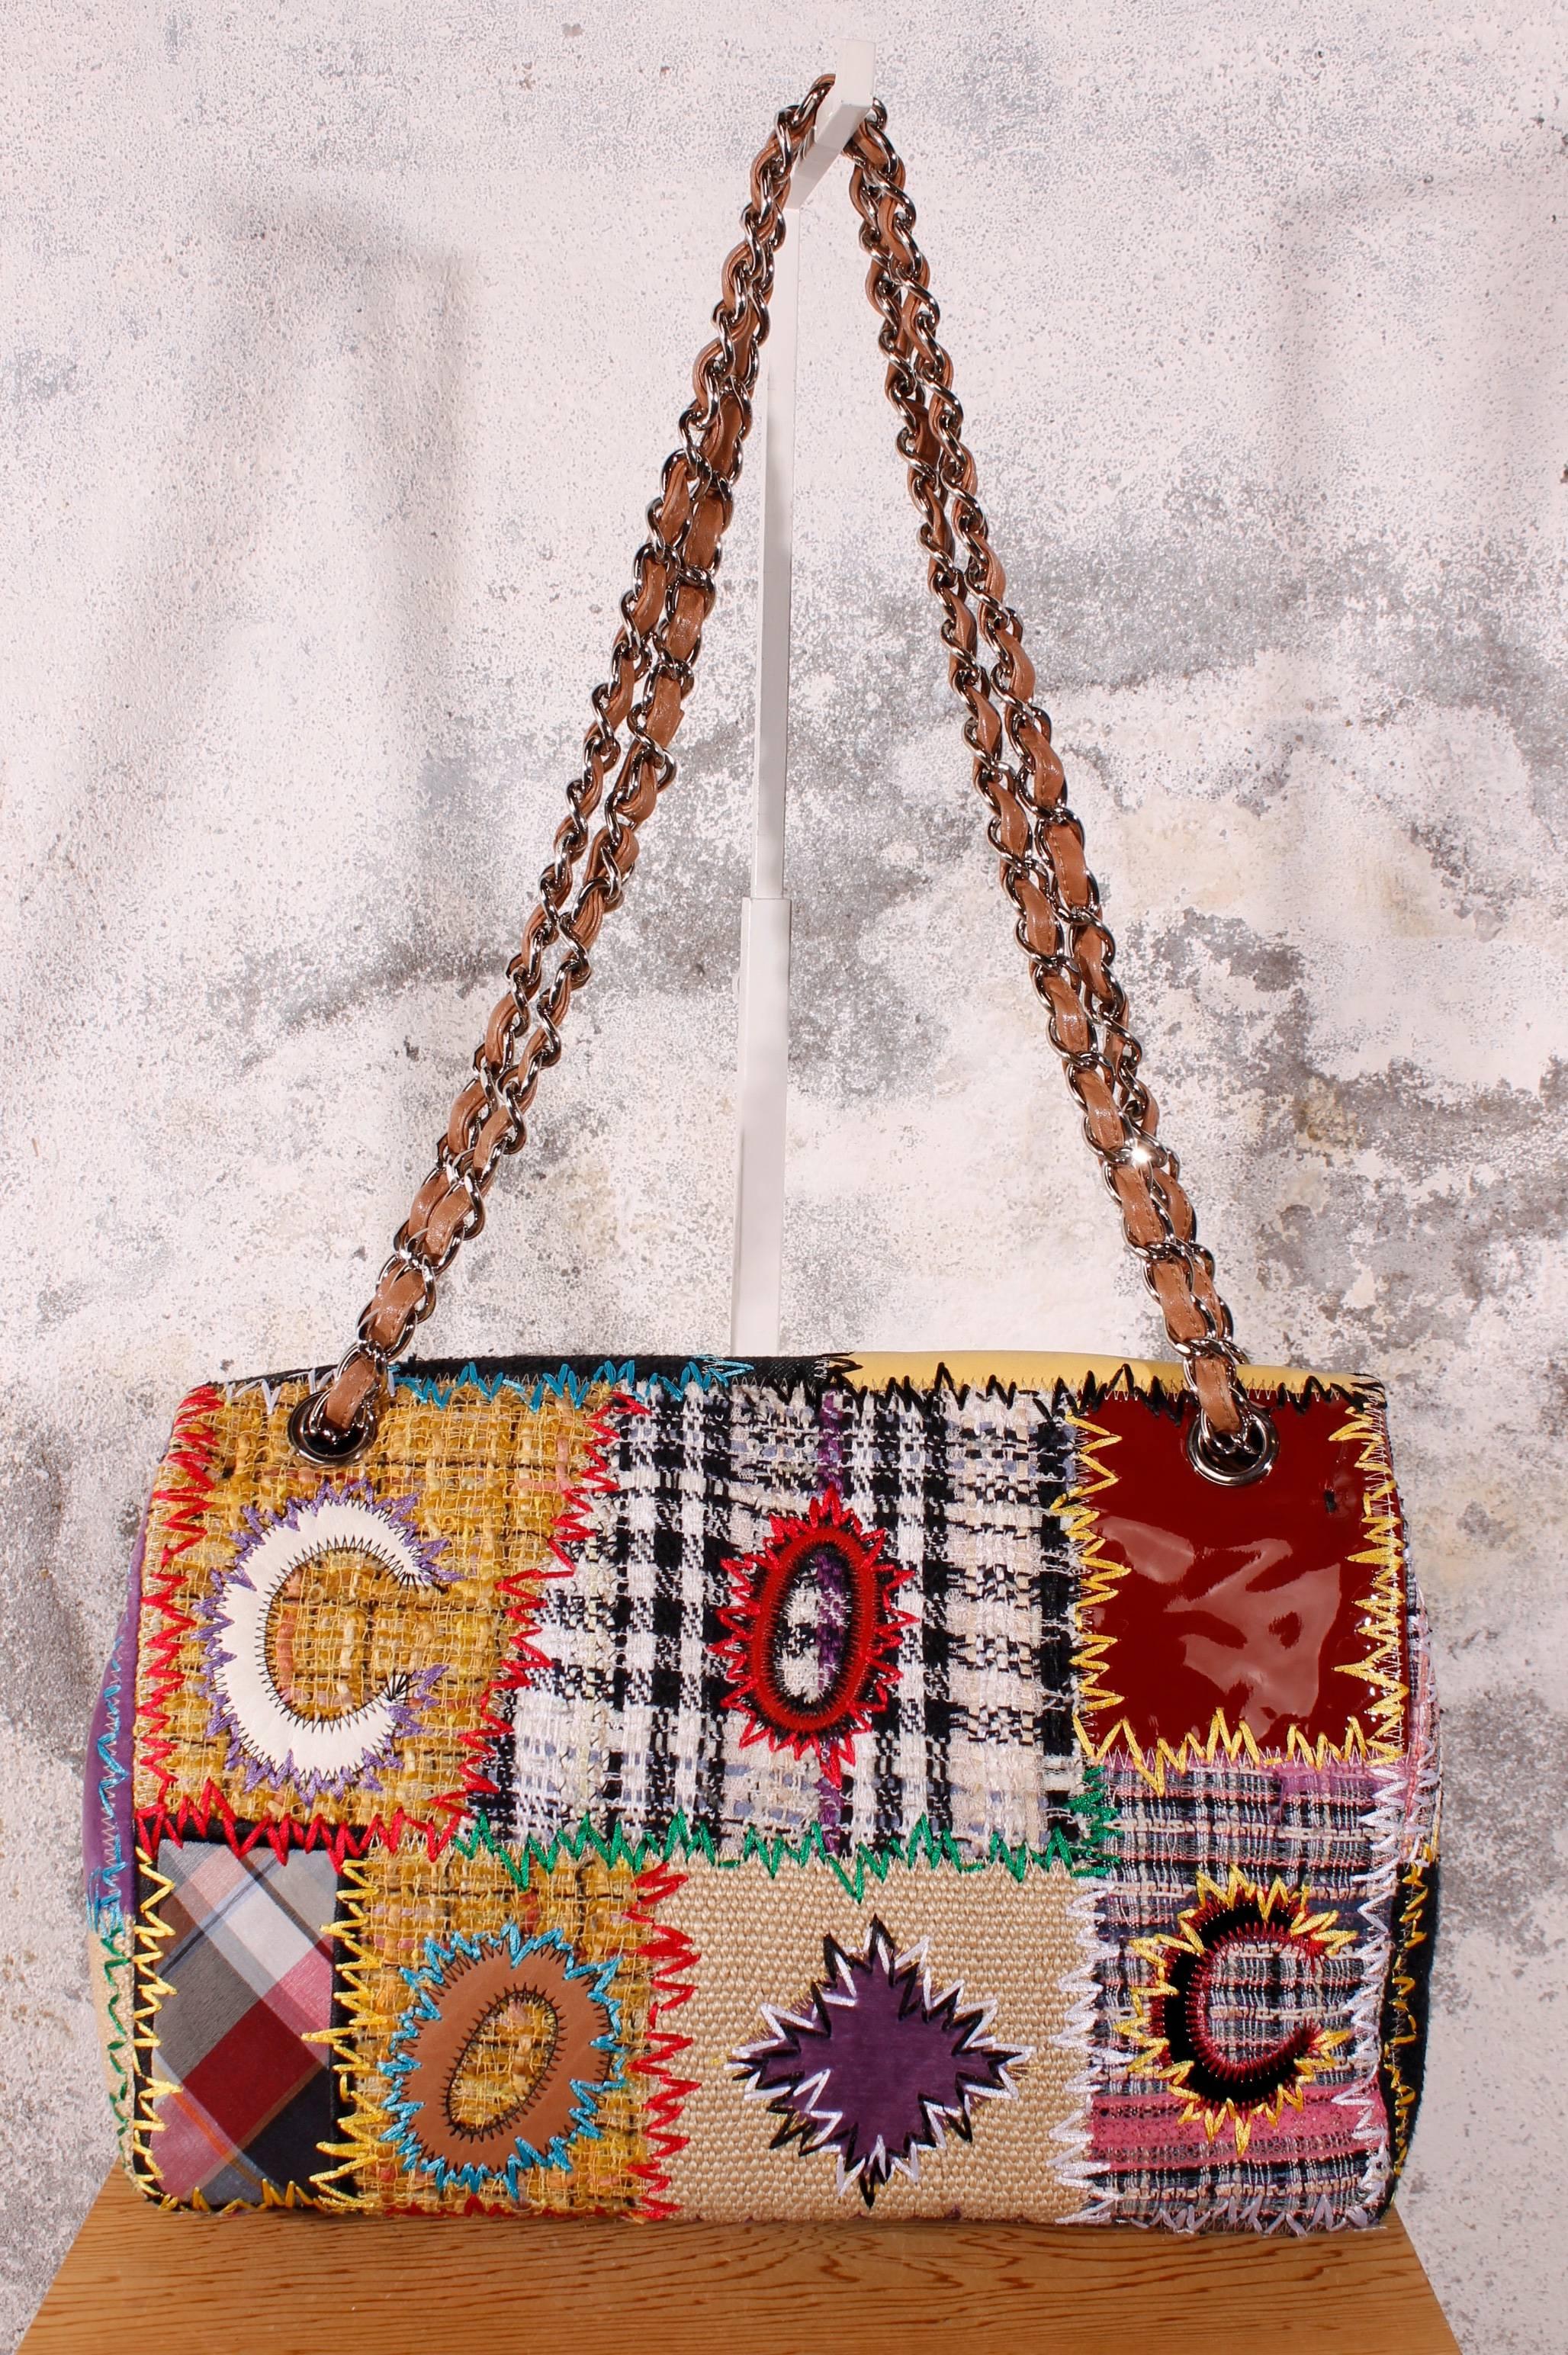 chanel patchwork bag